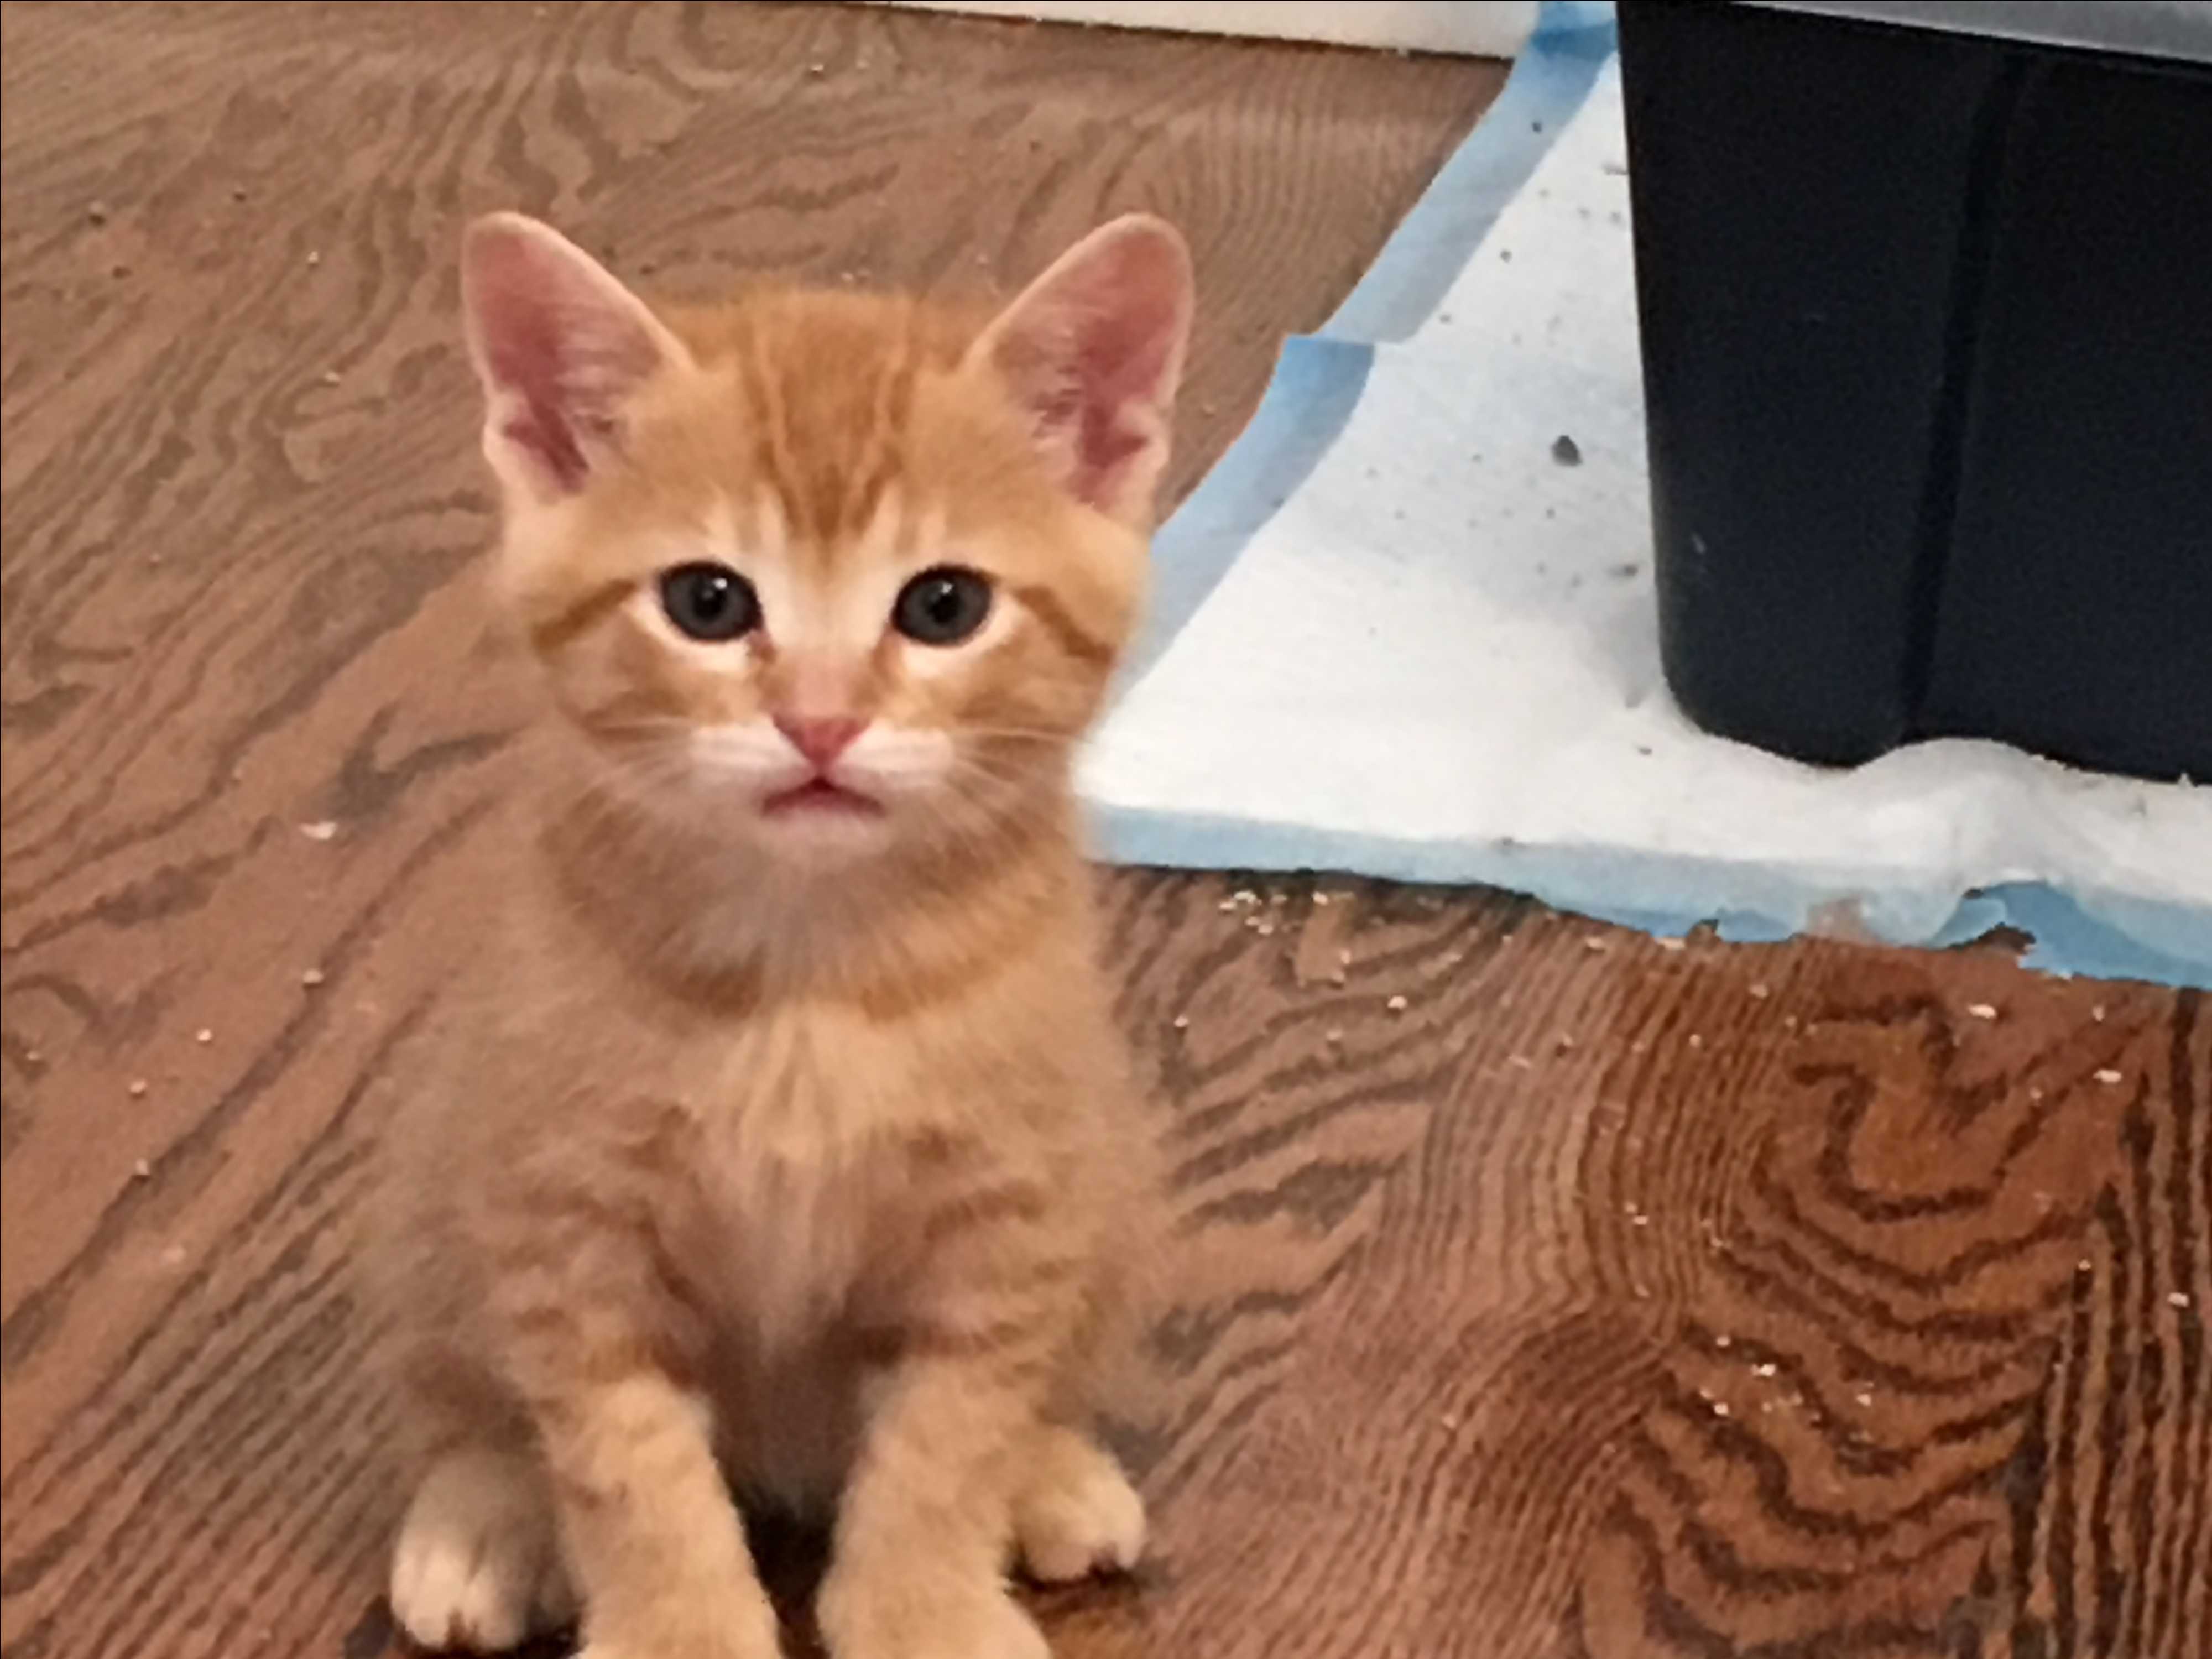 2 week old orange tabby kitten